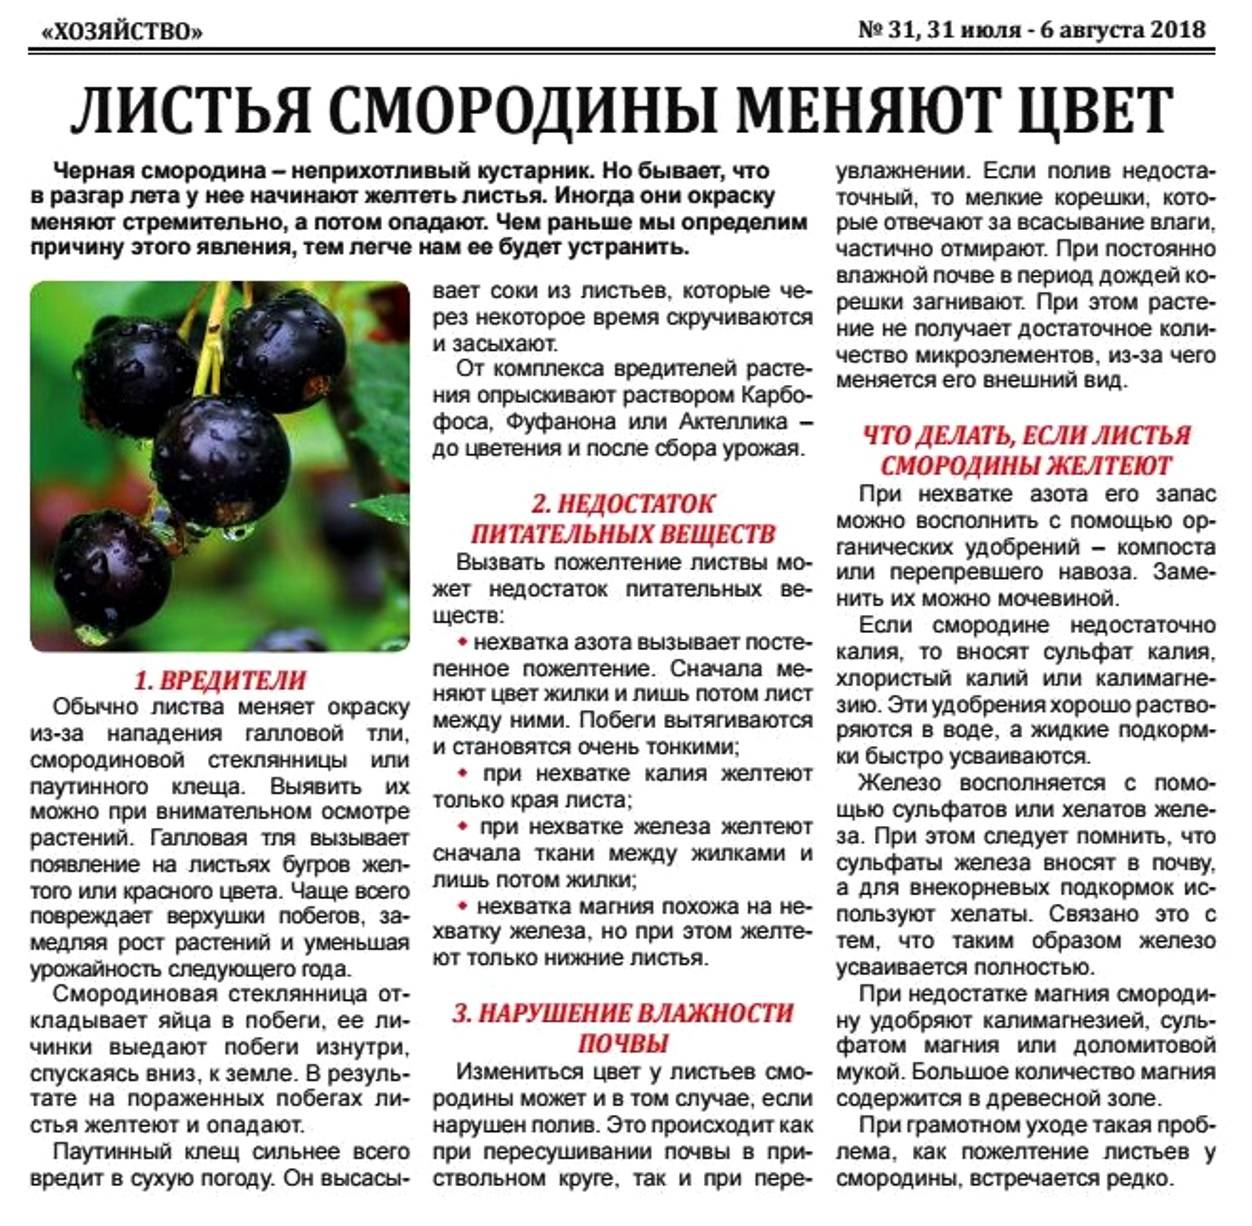 Описание смородины белорусской сладкой — правила посадки, ухода и размножения